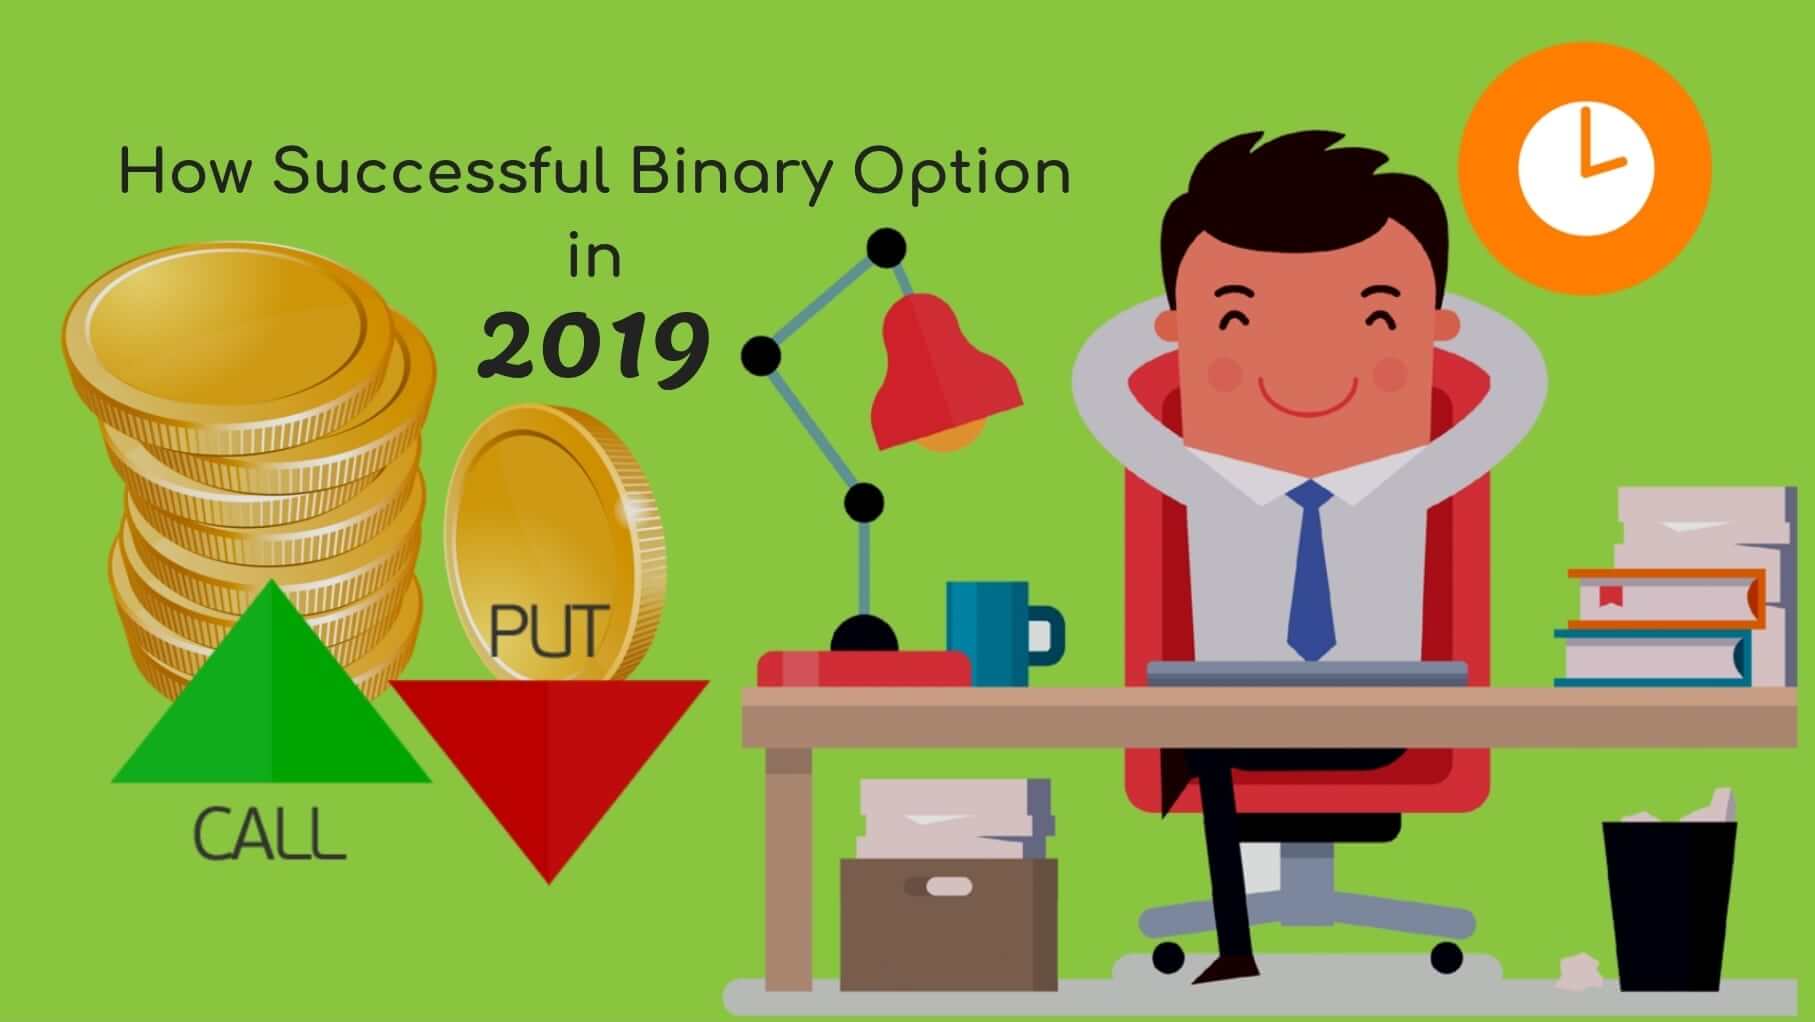 Trade binary options with success.com